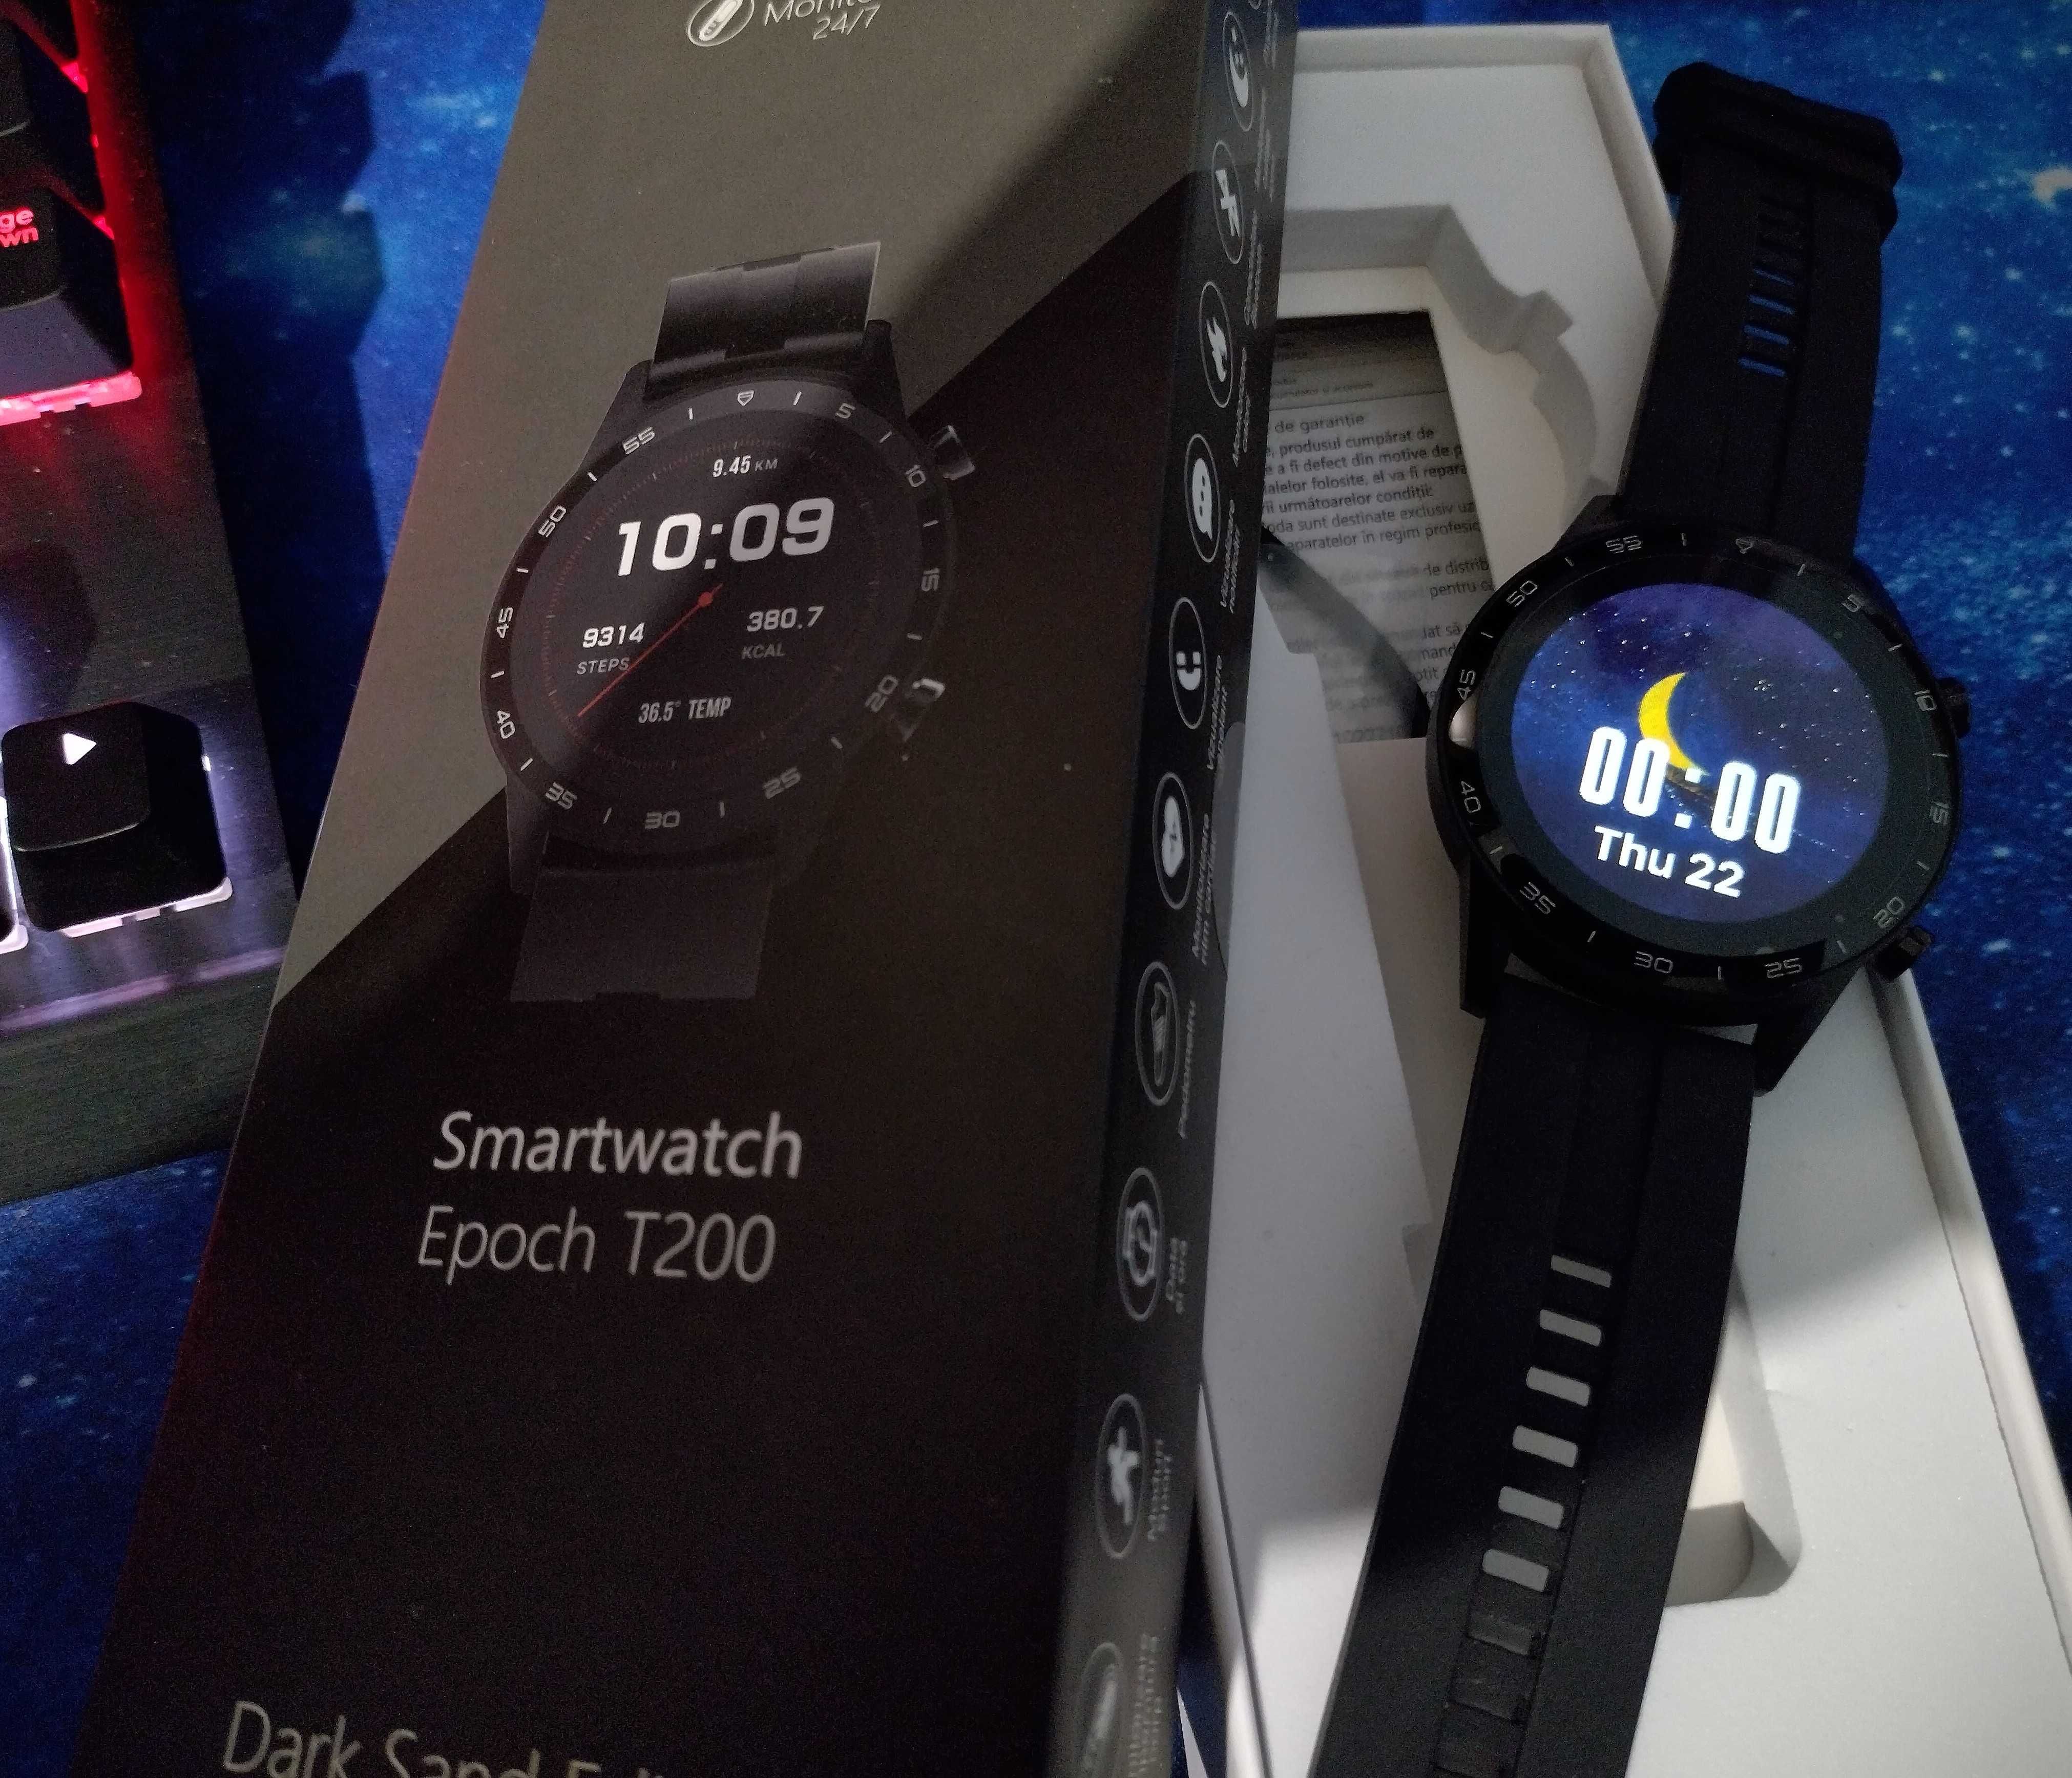 Smartwatch E-BODA Epoch T200, Android + iOS, silicon, Dark Sand